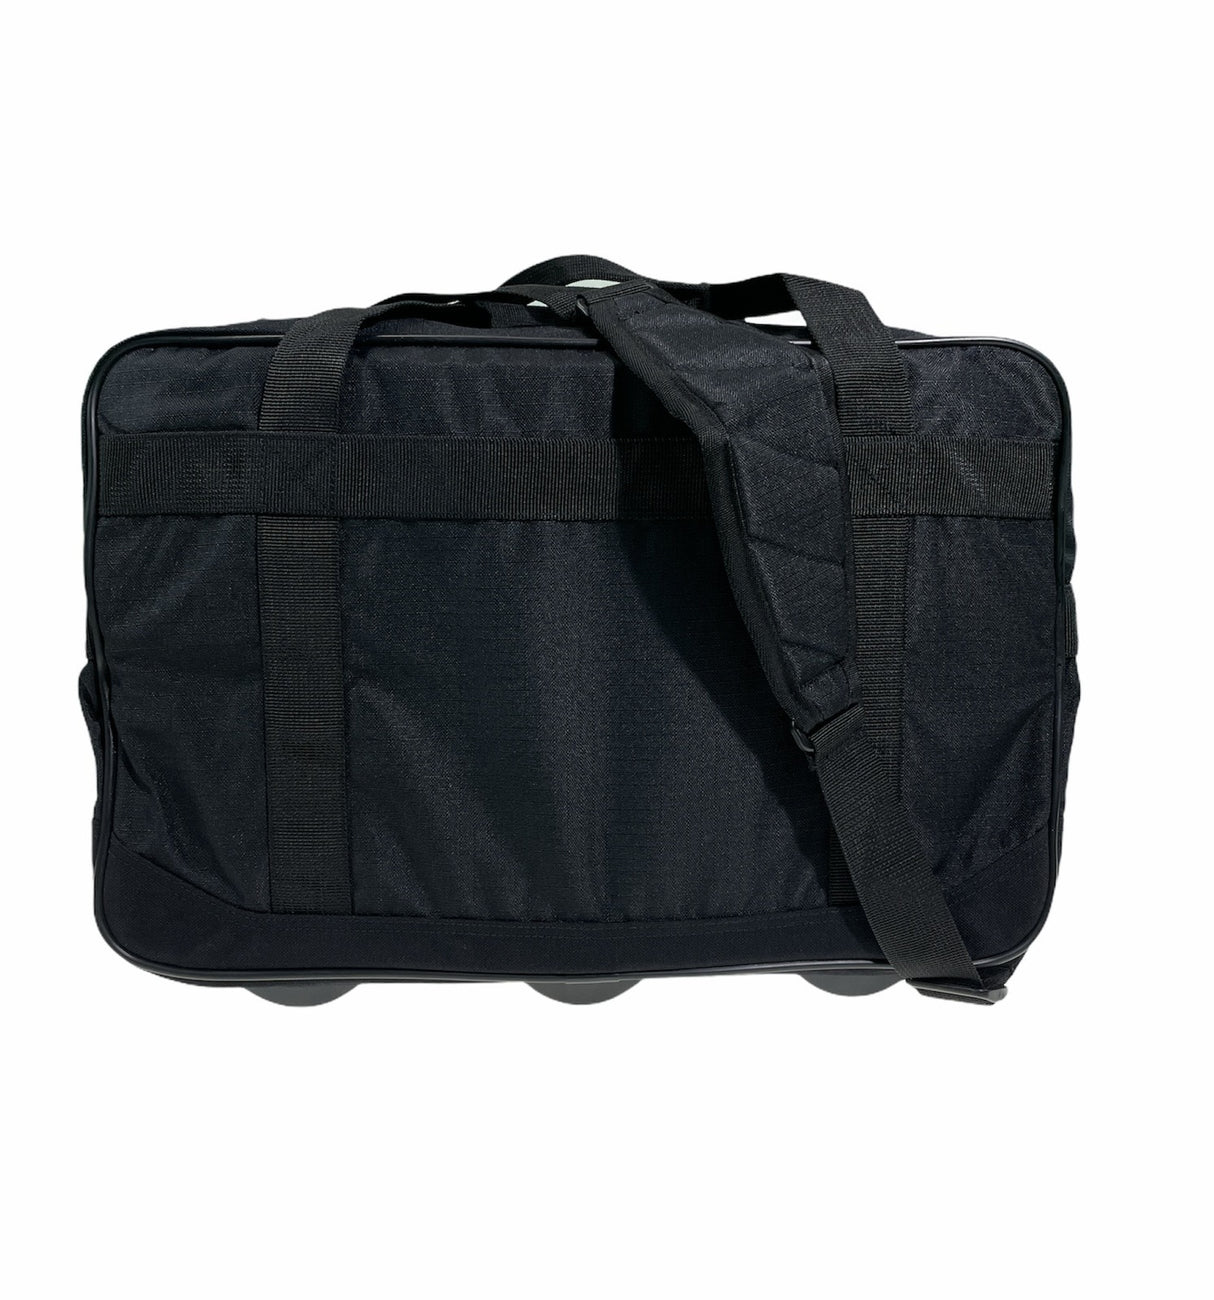 44L Foldable Duffel Bag Gym Sports Luggage Travel Foldaway School Bags - Black